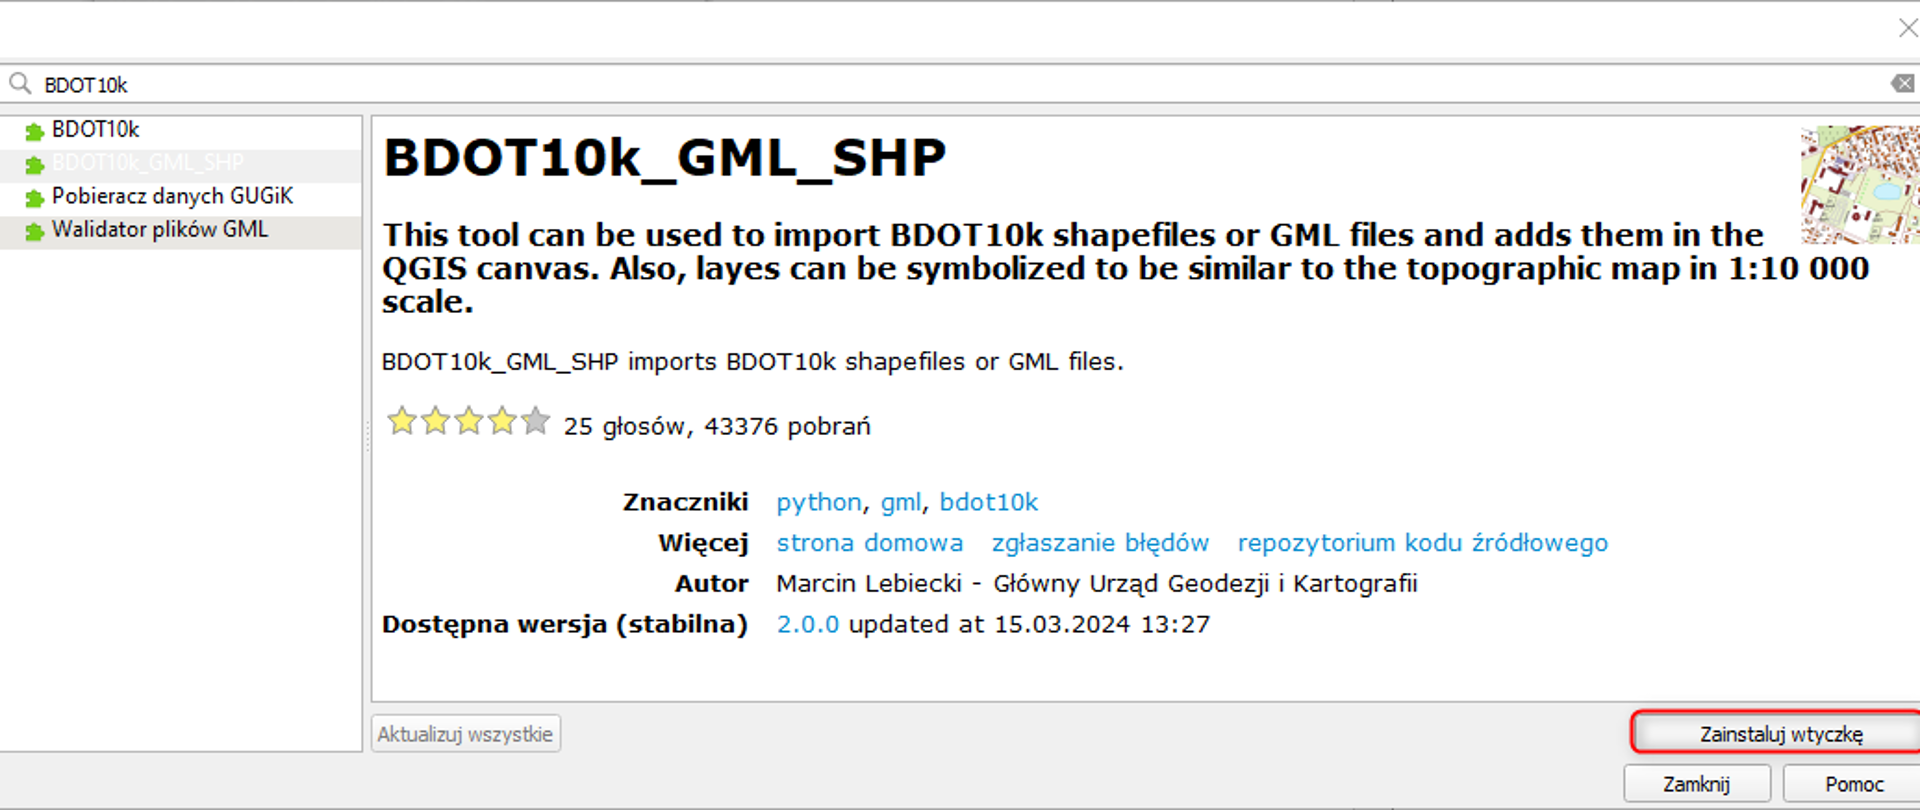 Ilustracja przedstawia sposób instalacji wtyczki BDOT10k_GML_SHP w oprogramowaniu QGIS